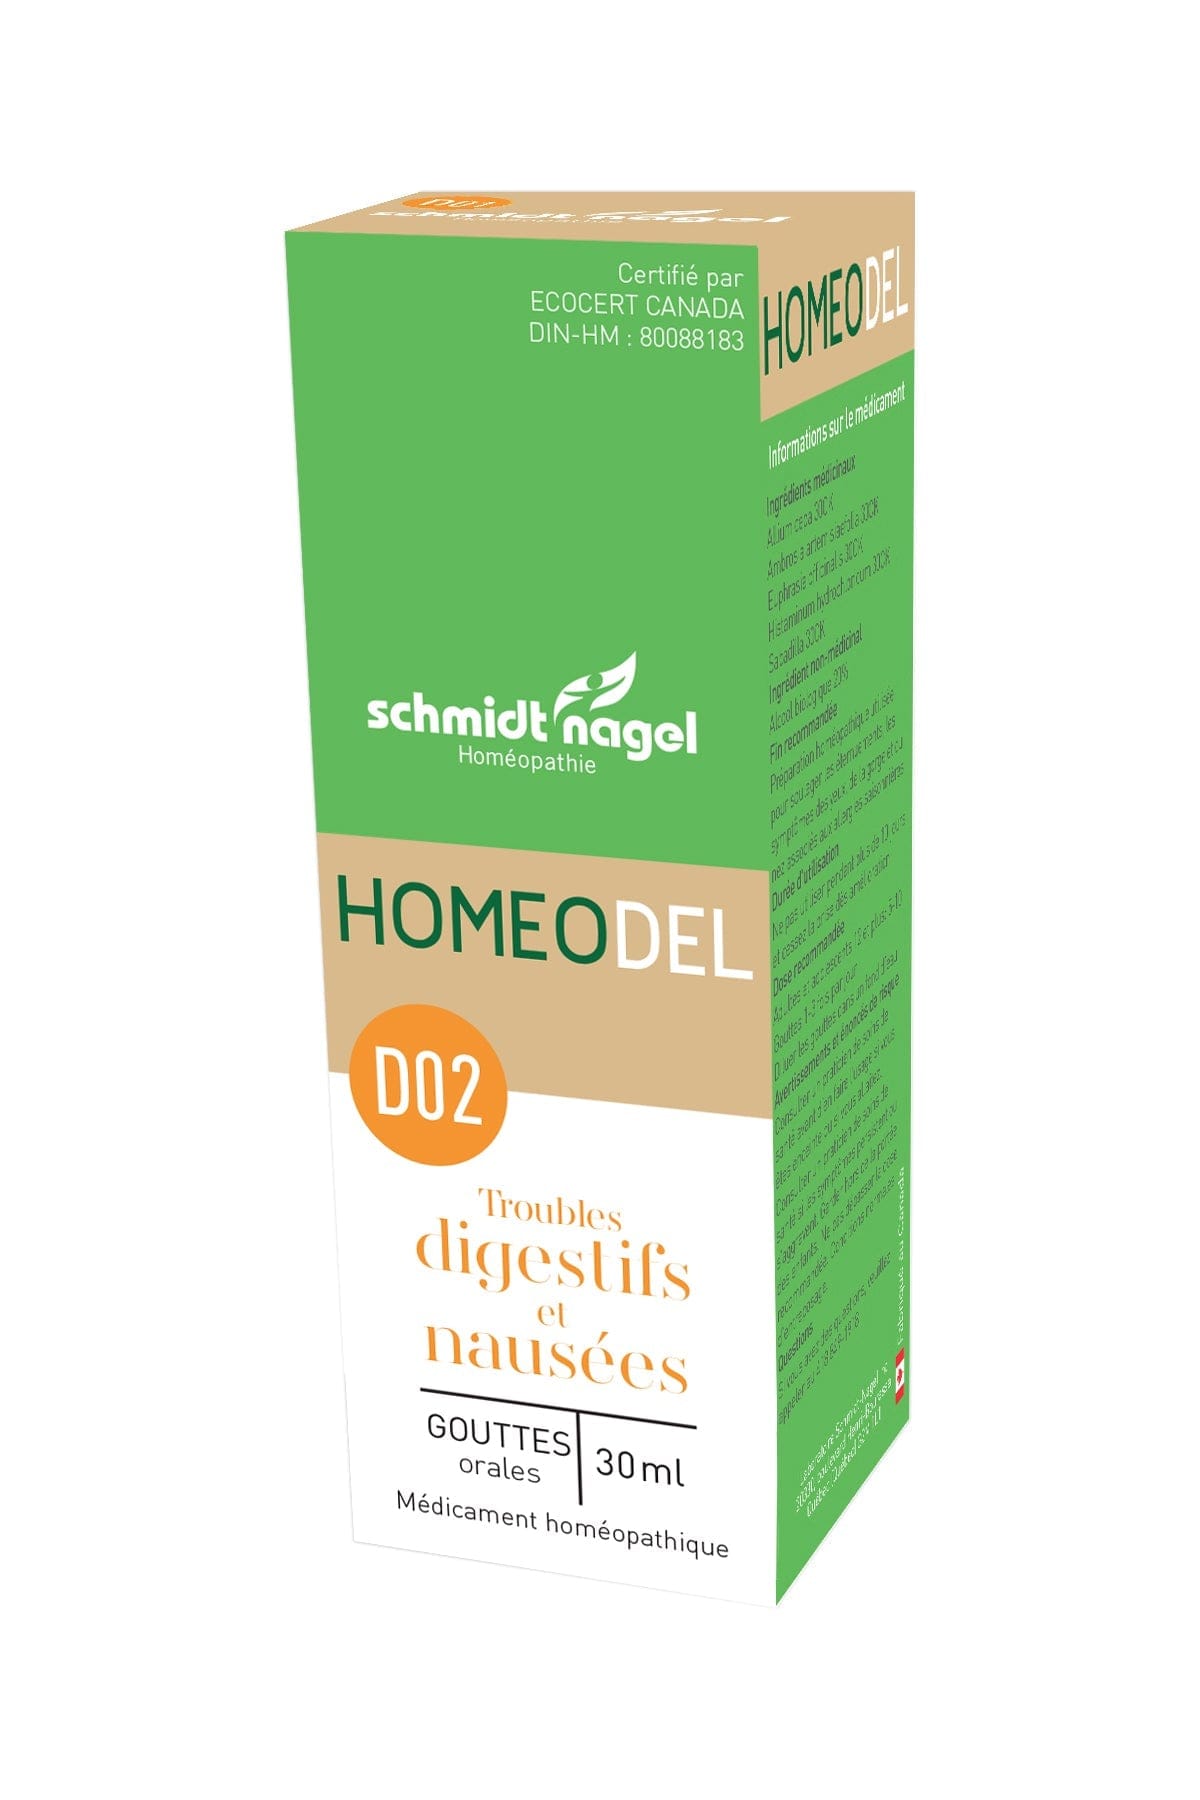 HOMEODEL Suppléments Homeo D02 (trouble digestifs et nausées) 30ml